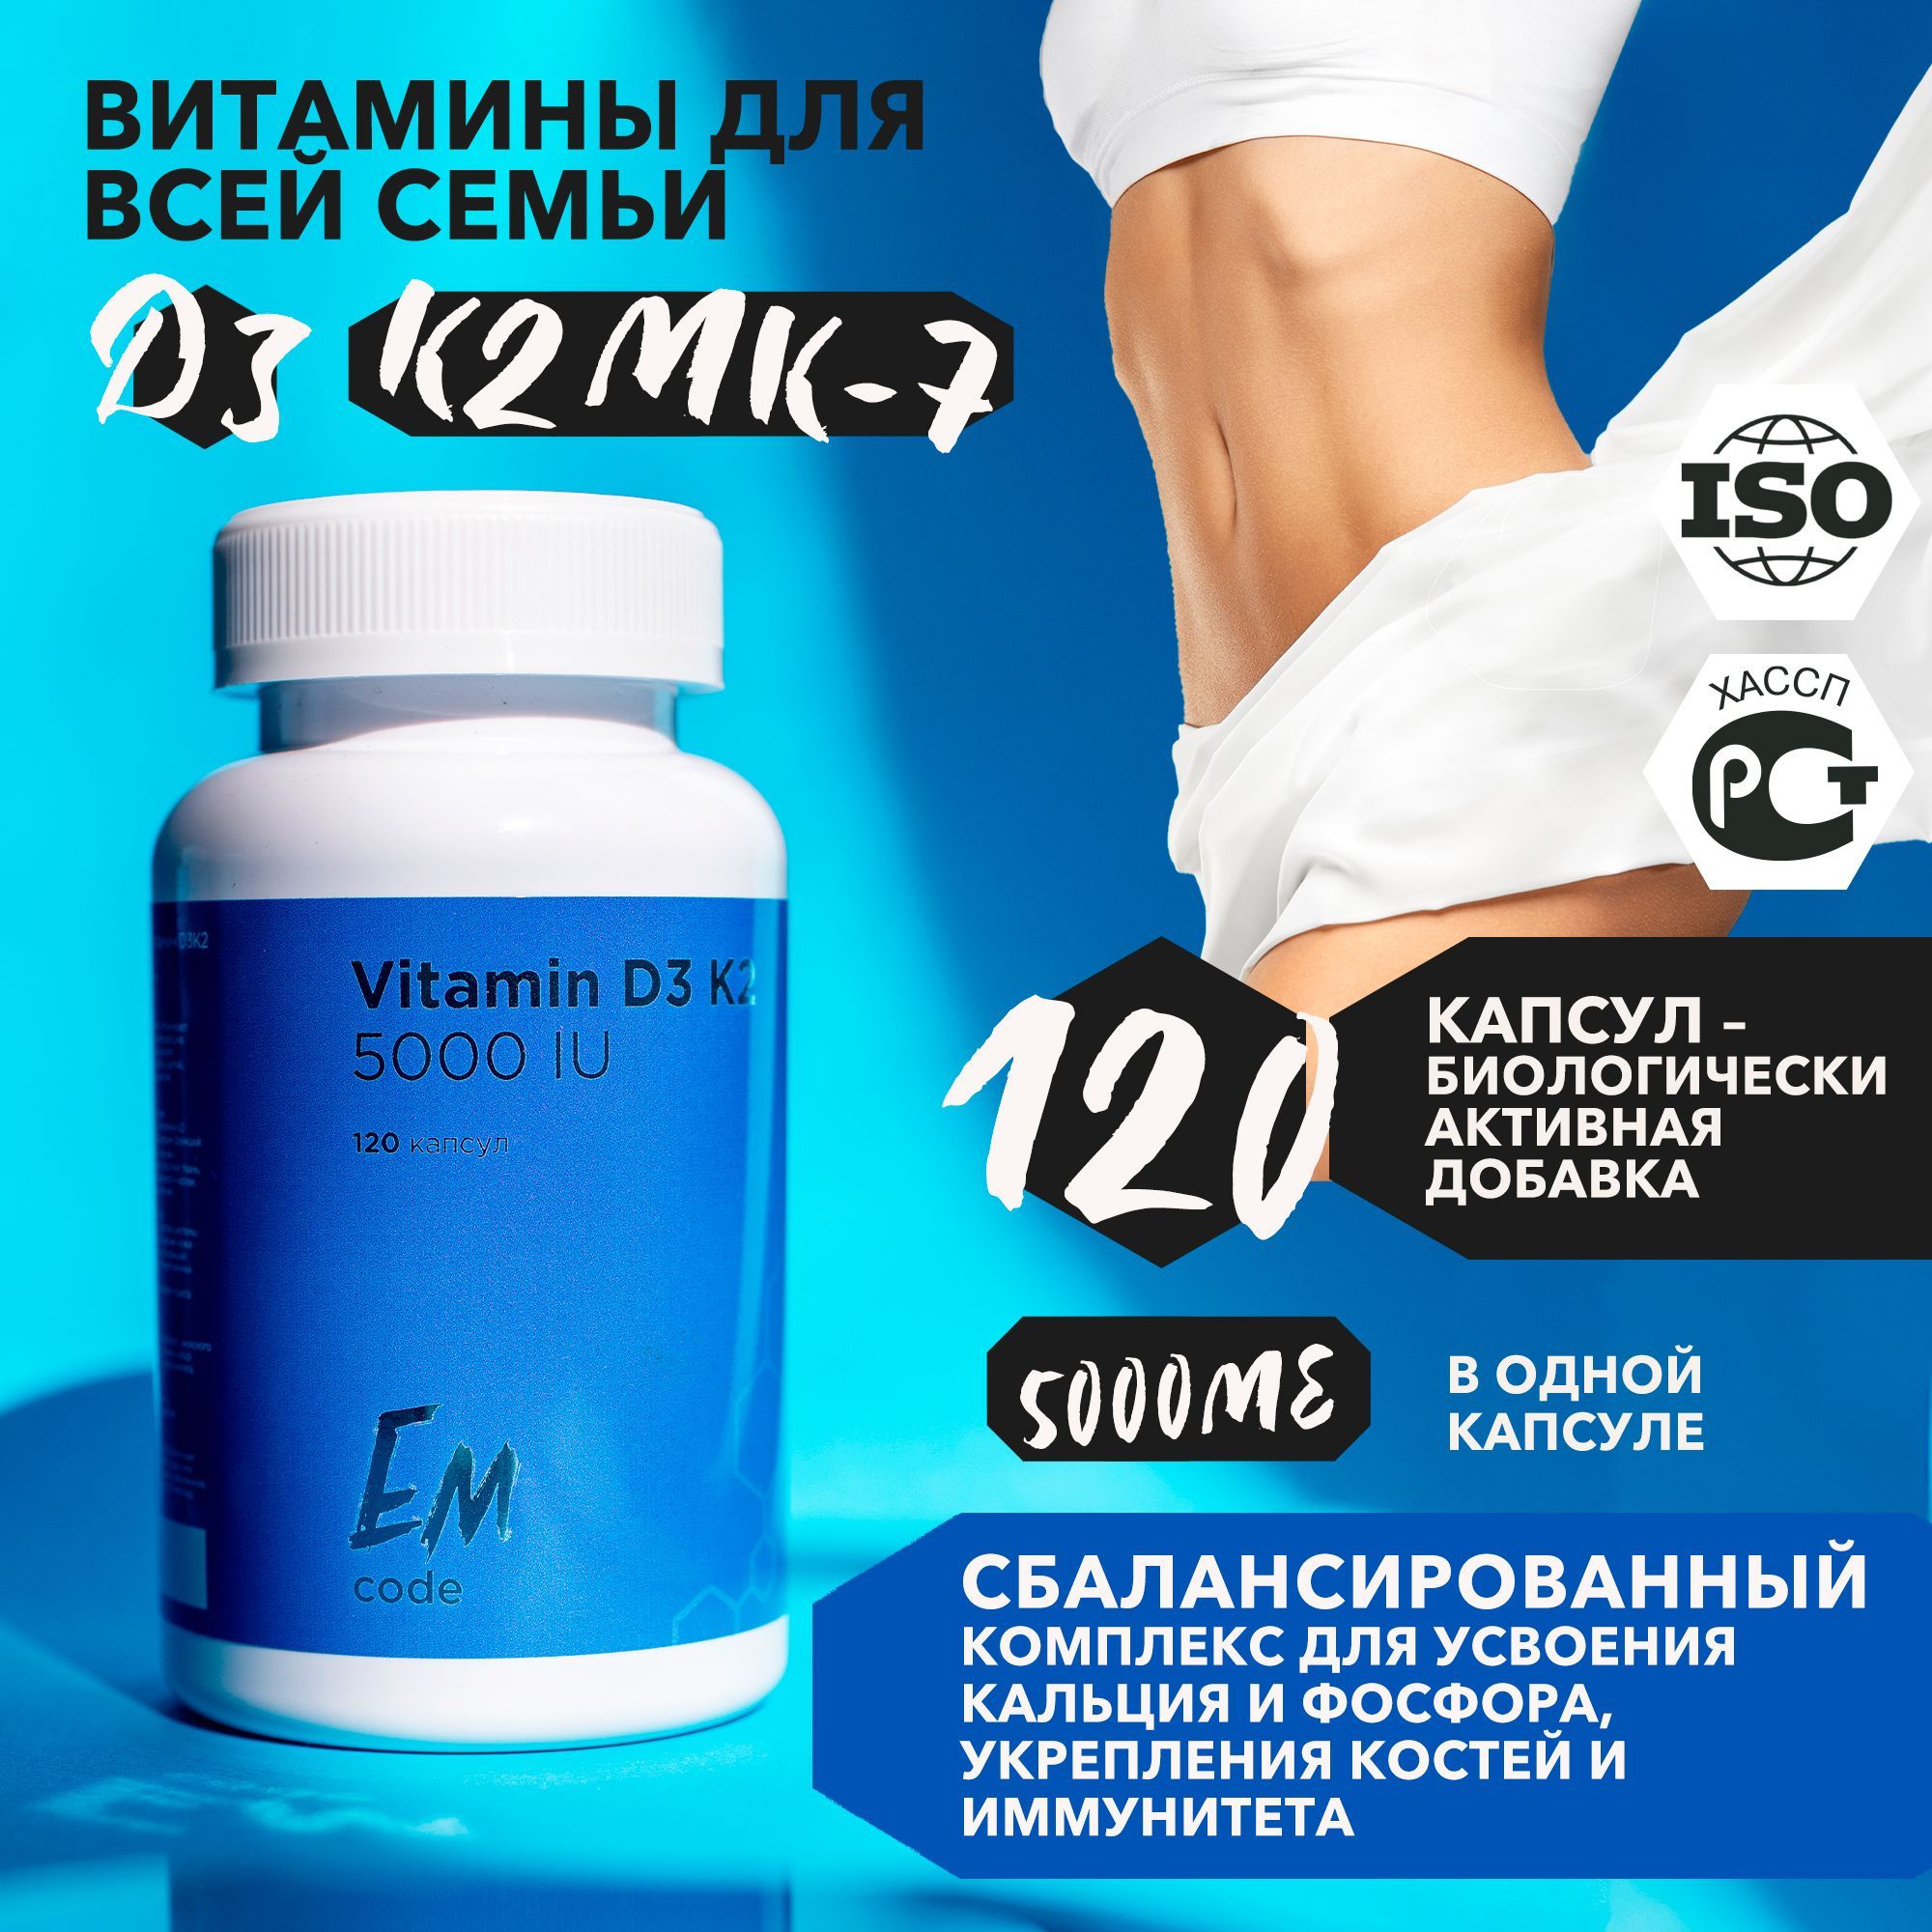 Витамины для мужчин после 50 отзывы. Витамины для мужского здоровья. Витамины для мужчин в капсулах. Витамины для мужчин комплекс самые эффективные. Алтайские комплексы витаминов для мужчин и женщин.